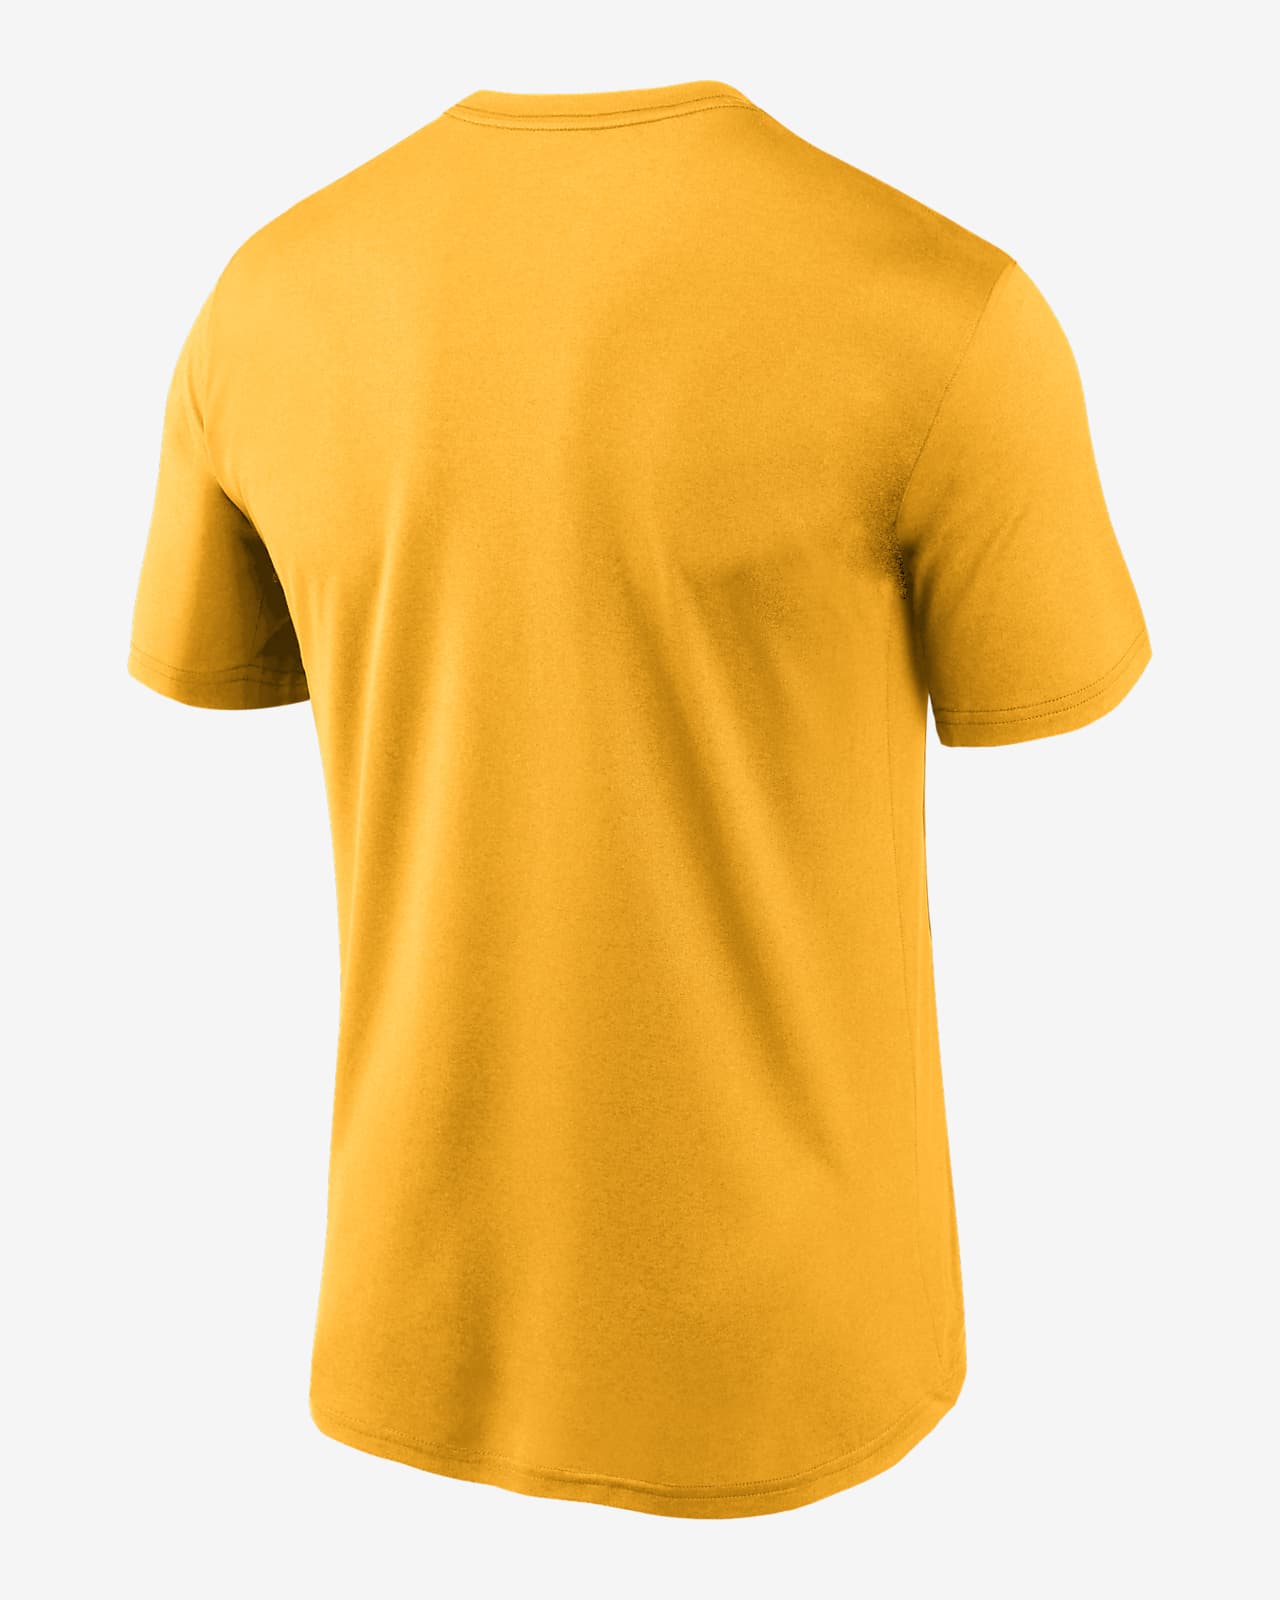 NIKE Oakland Athletics Baseball Yellow T Shirt Size Small Regular Fit